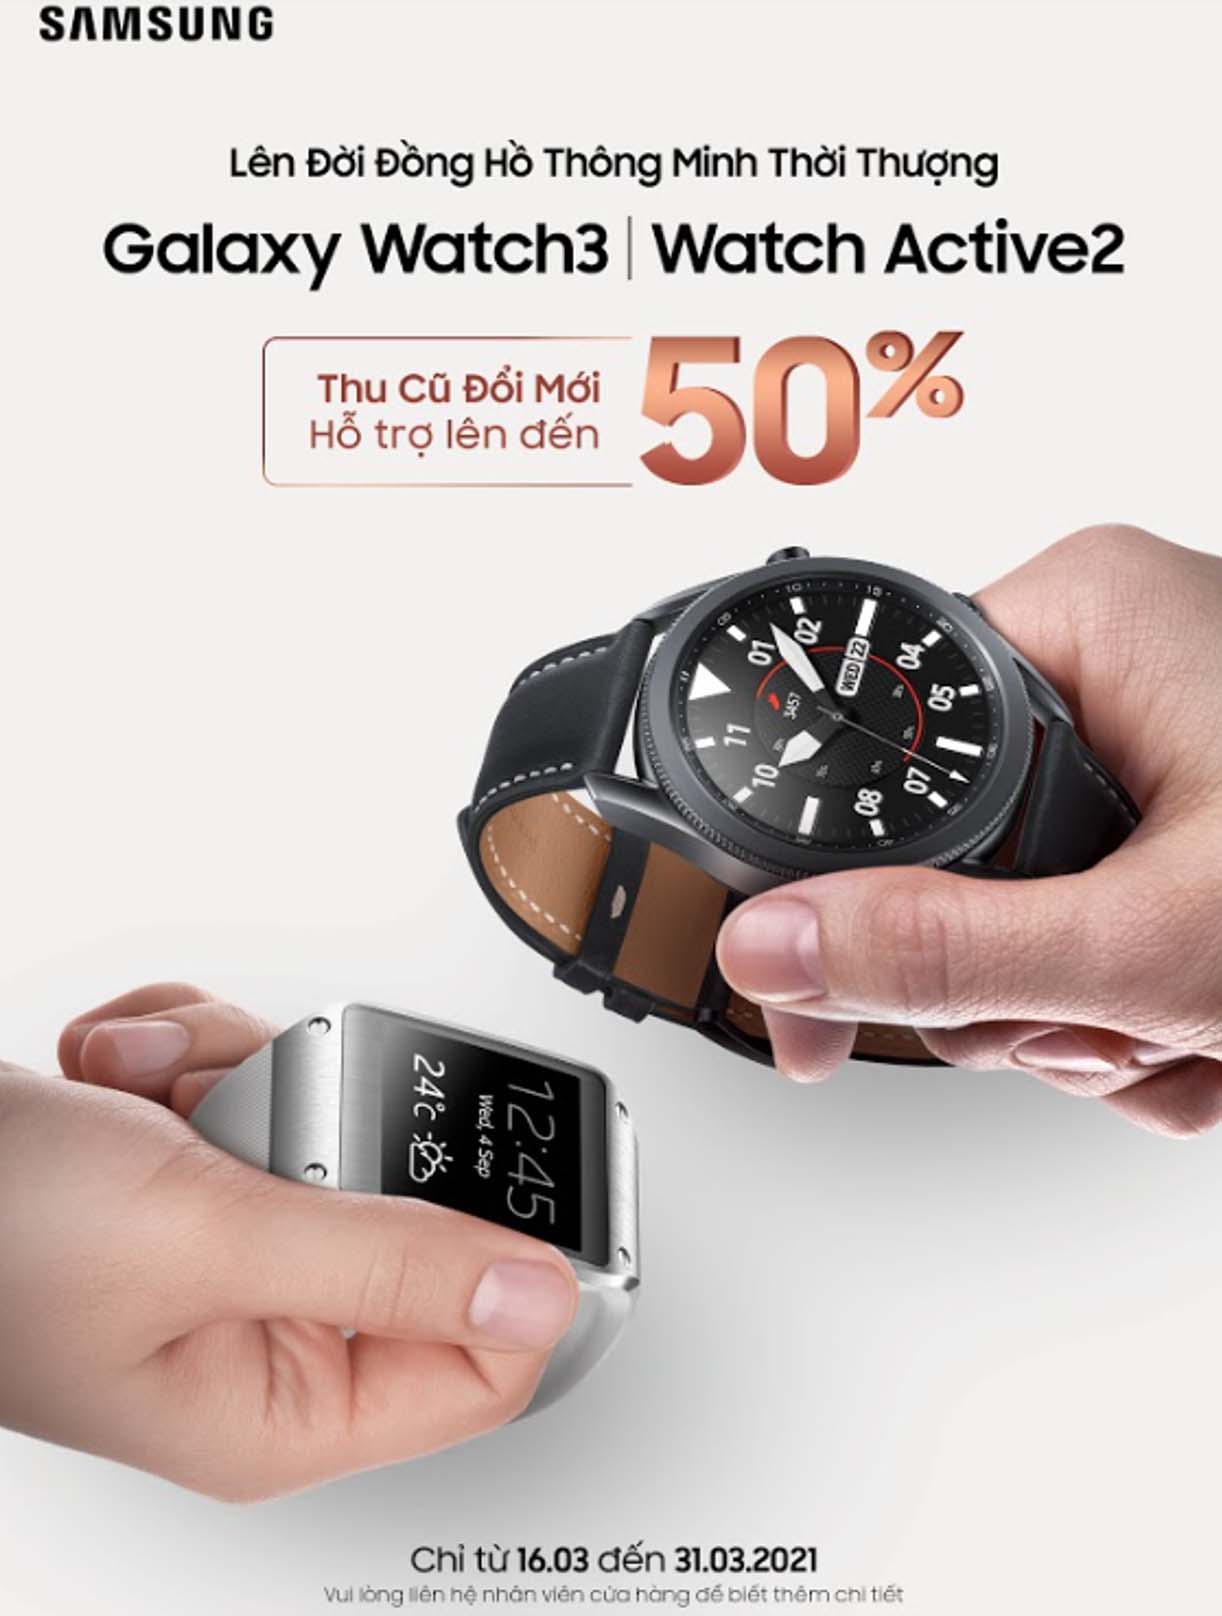 Chương trình thu cũ đổi mới dành cho đồng hồ thông minh Samsung Galaxy Watch